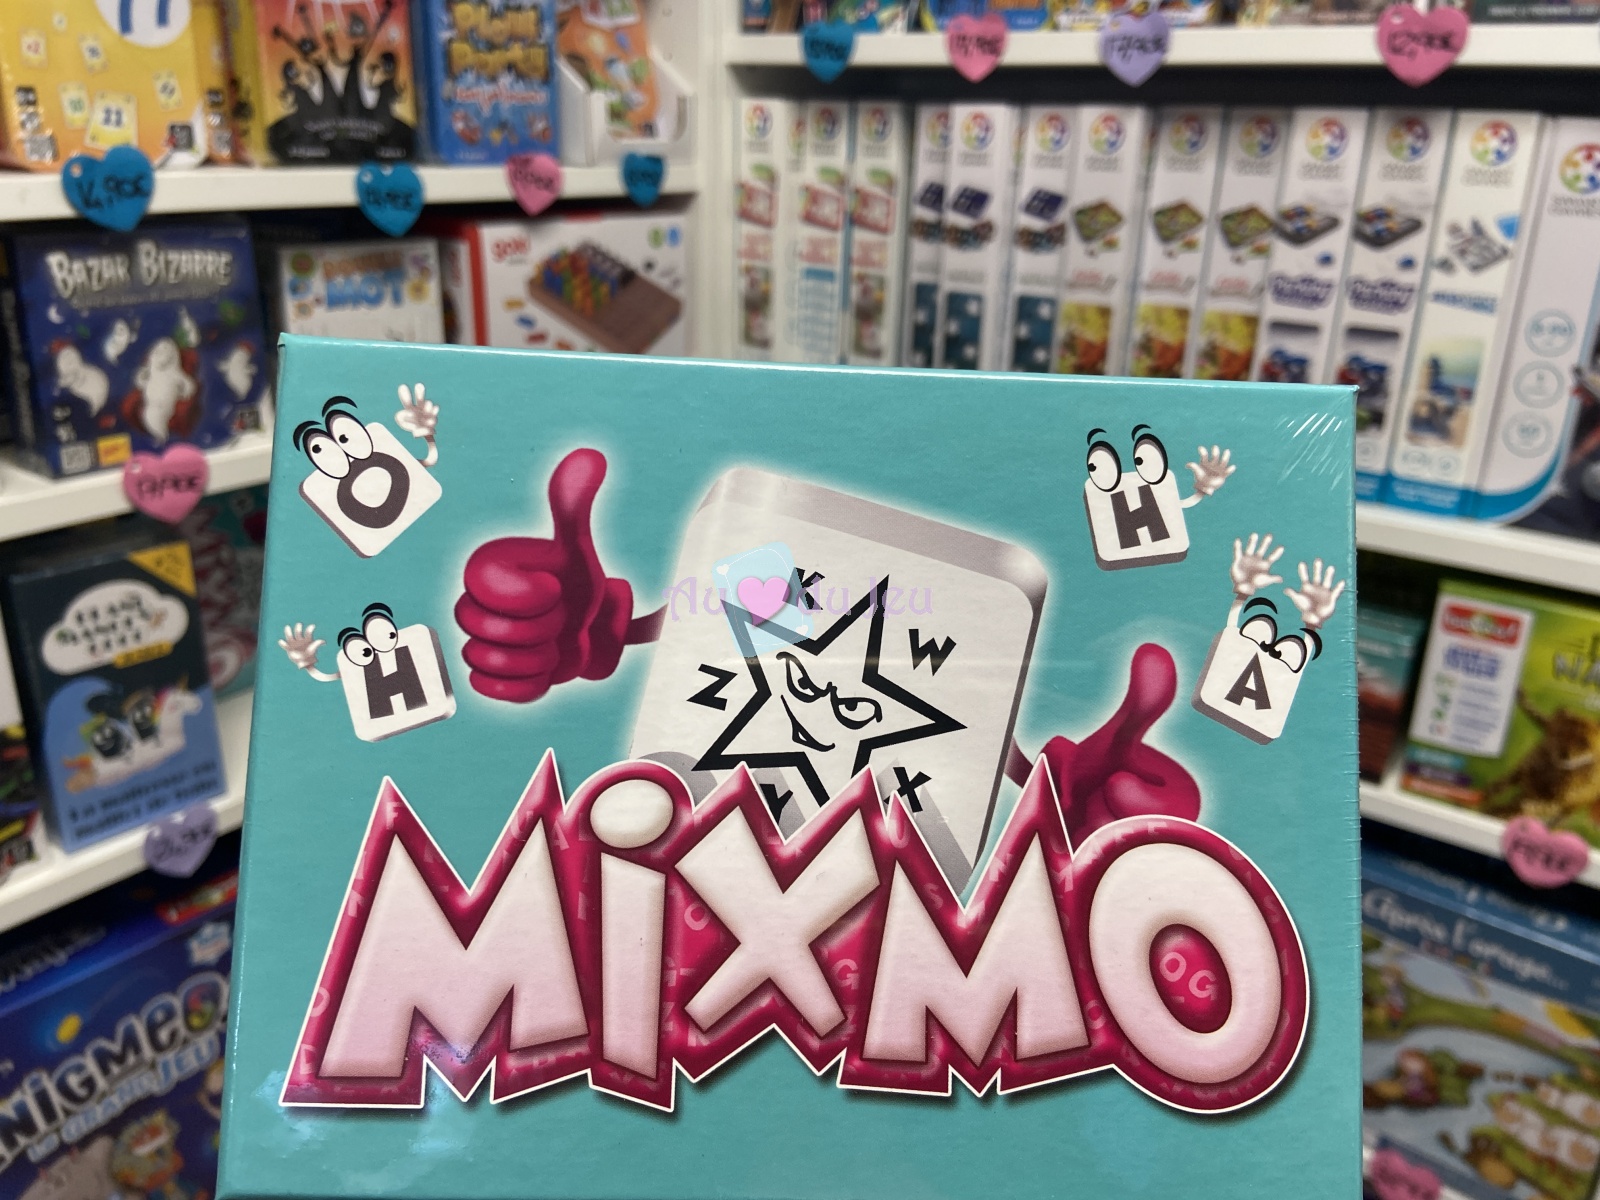 Mixmo